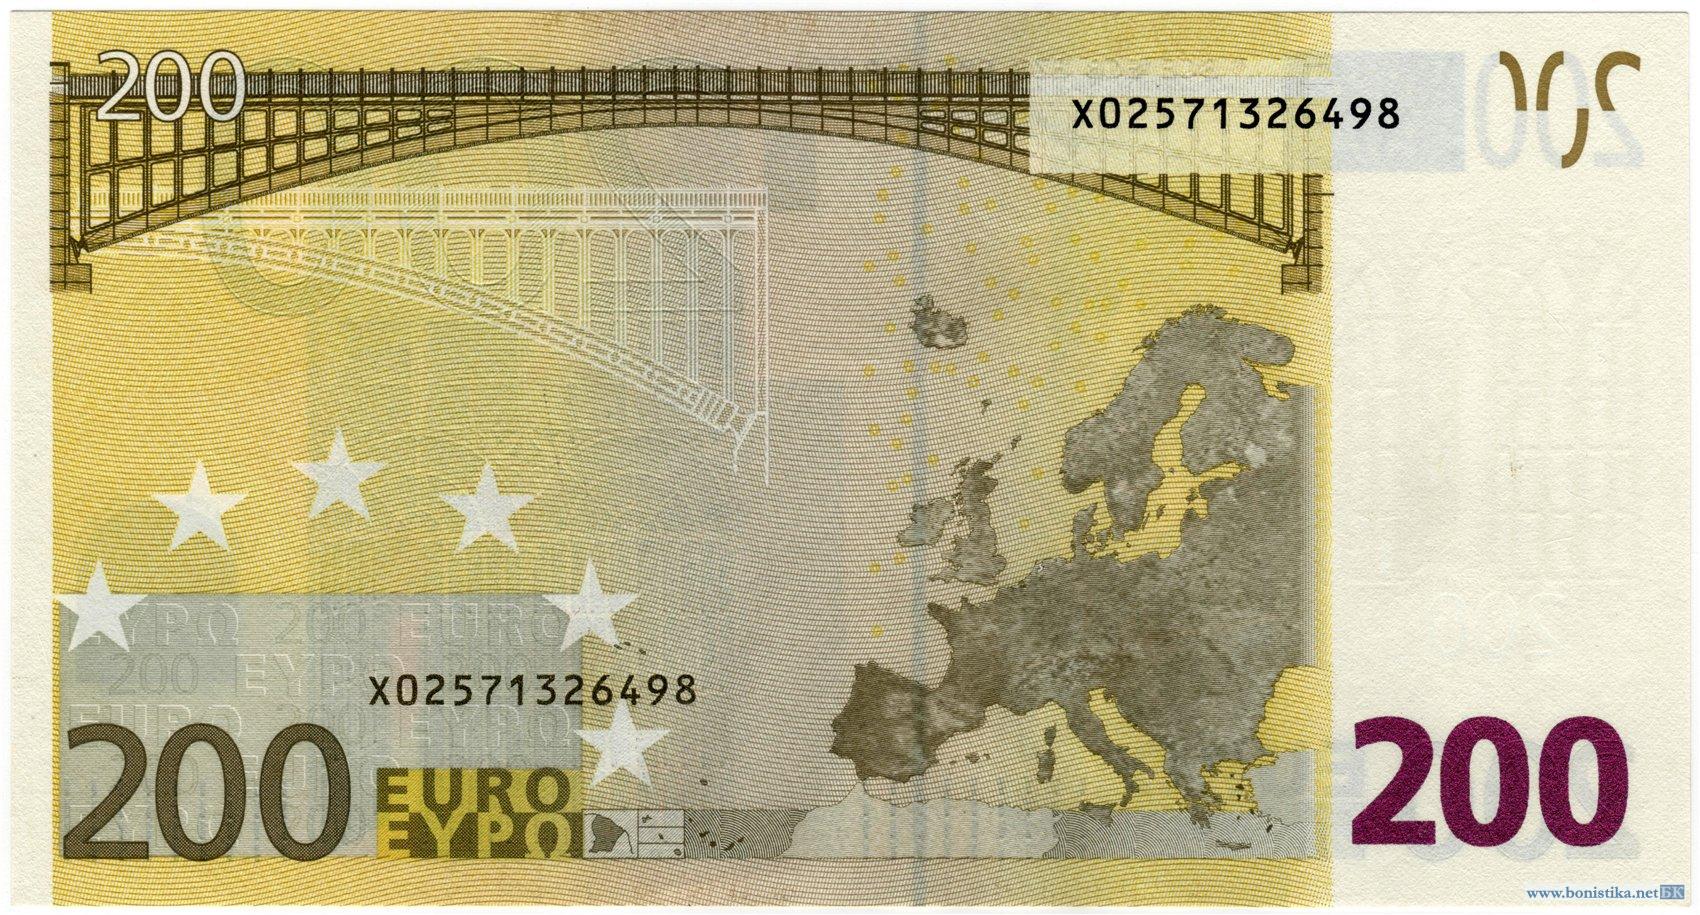 Банкнота 2002 года номиналом 200 евро: цвет – желтый, архитектурный стиль – индустриальный (модерн). Источник https://bonistika.net/